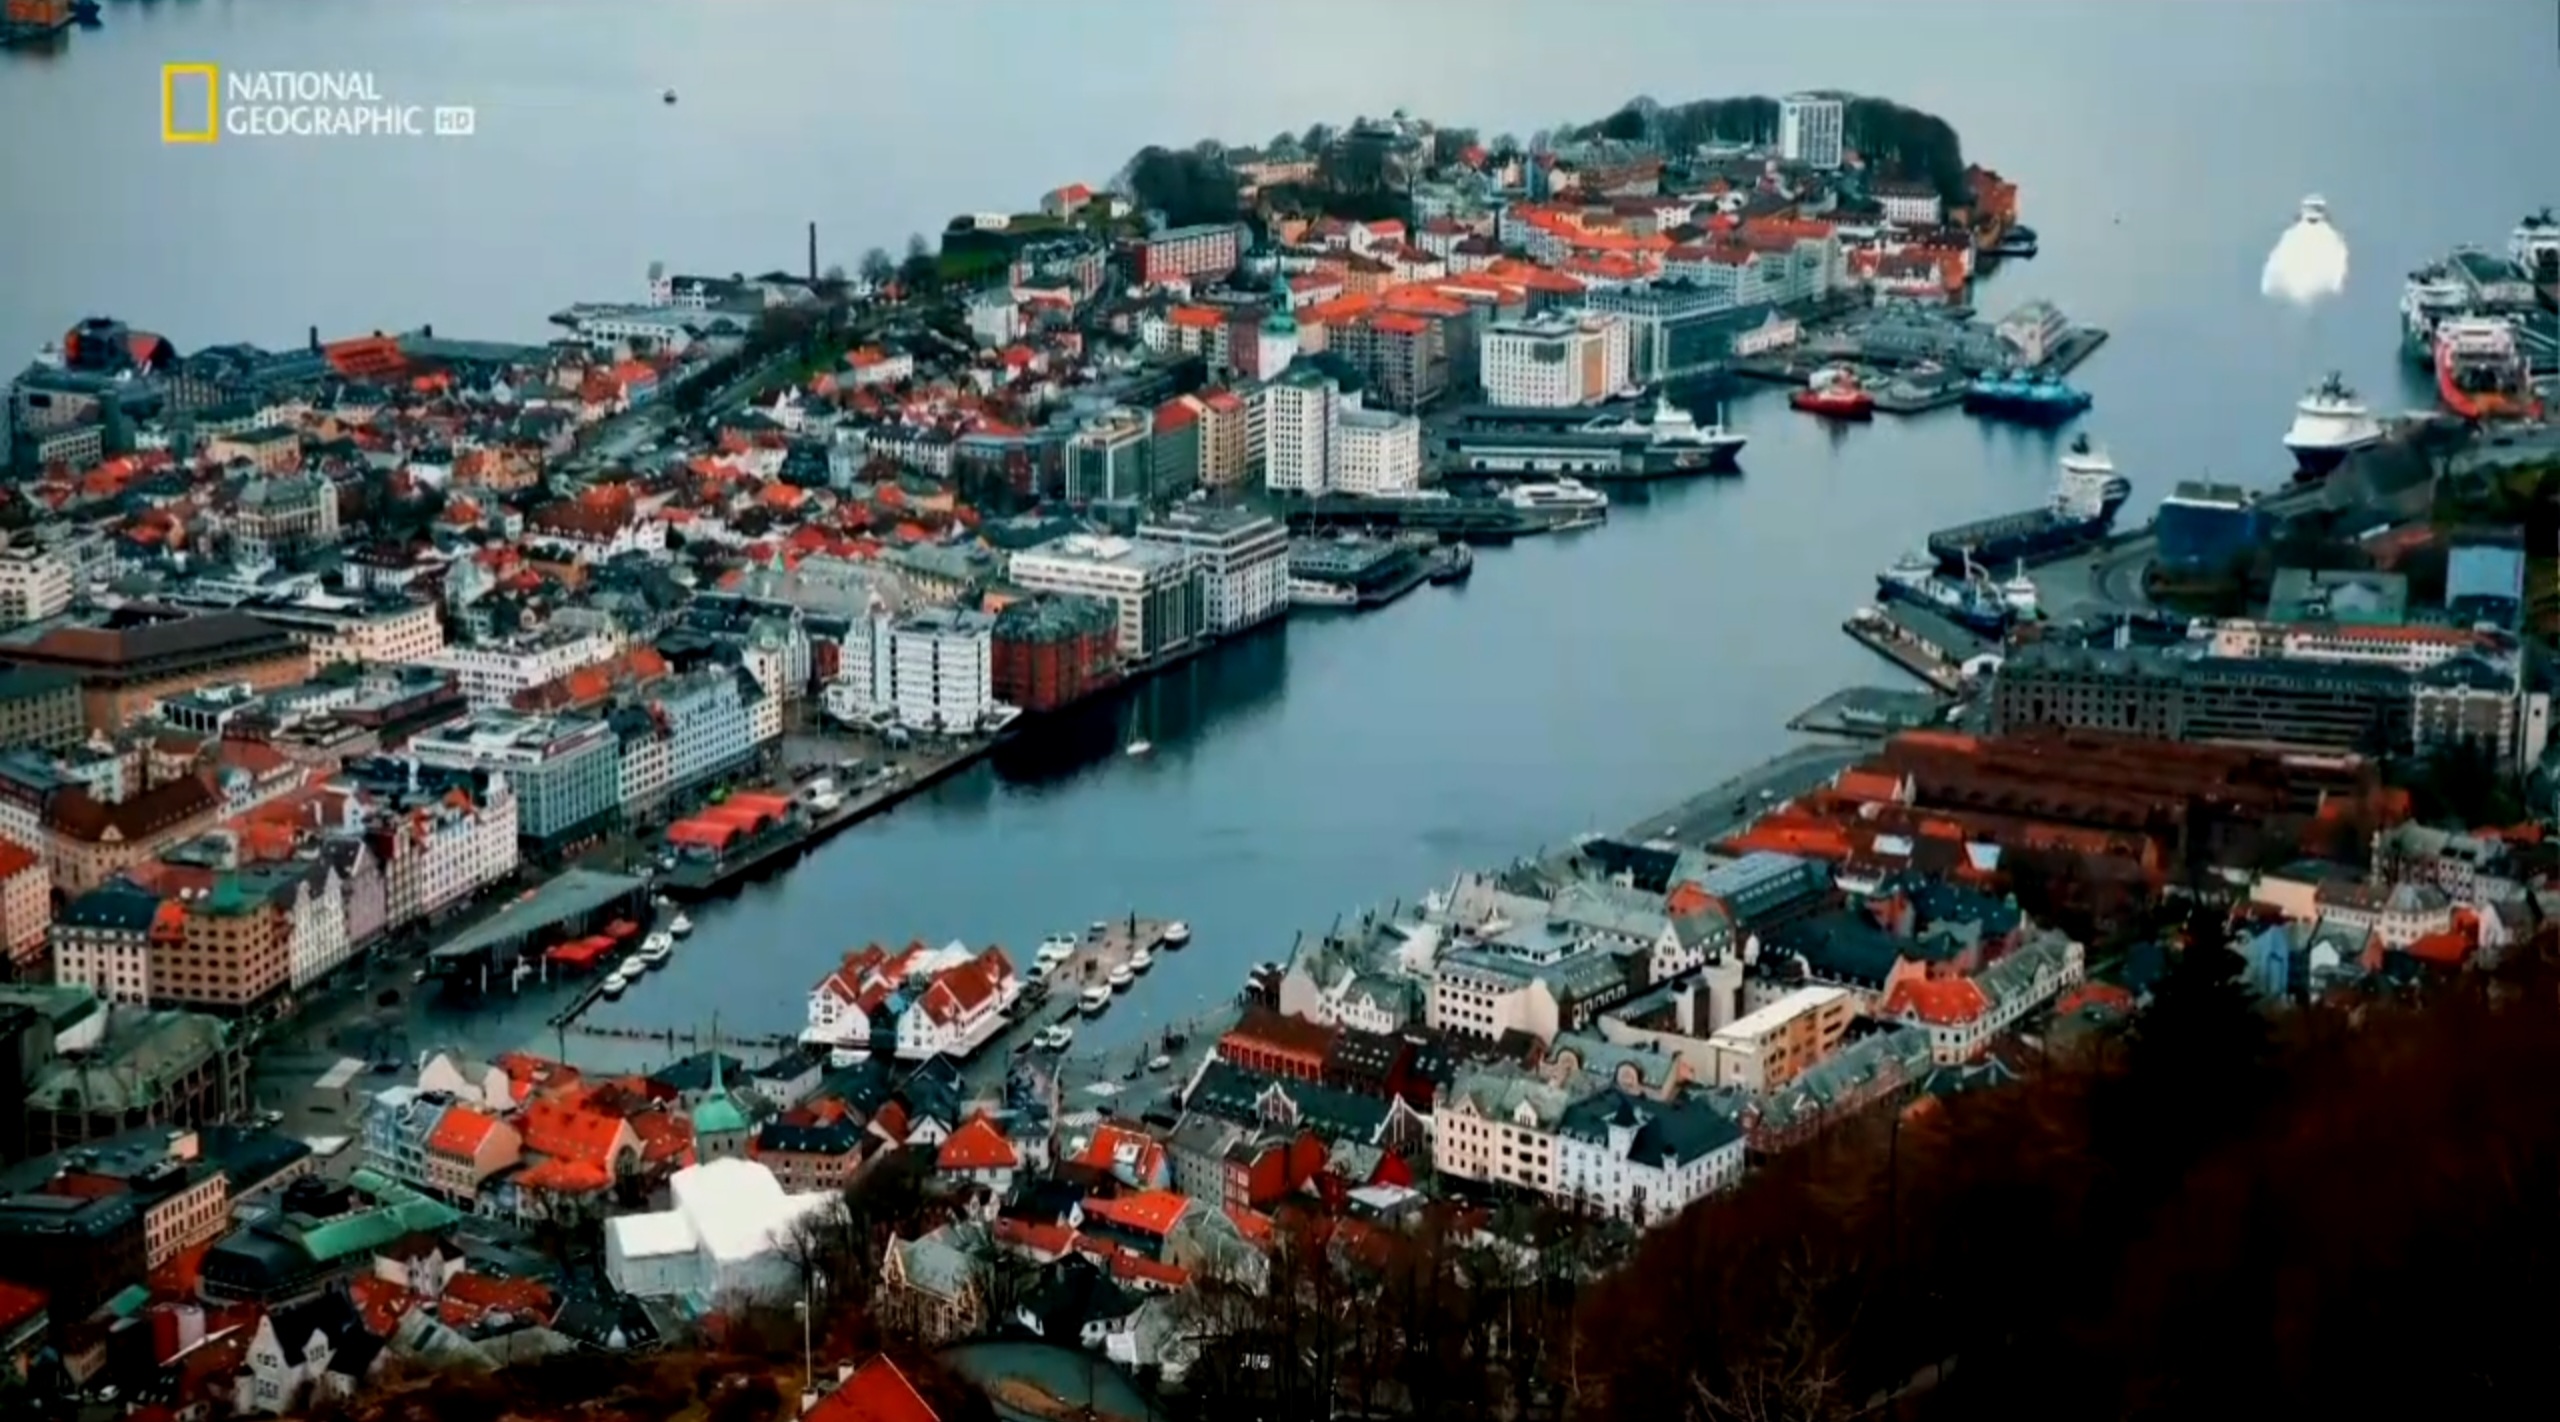 Europa von oben: Norway | Season 3 | Episode 1